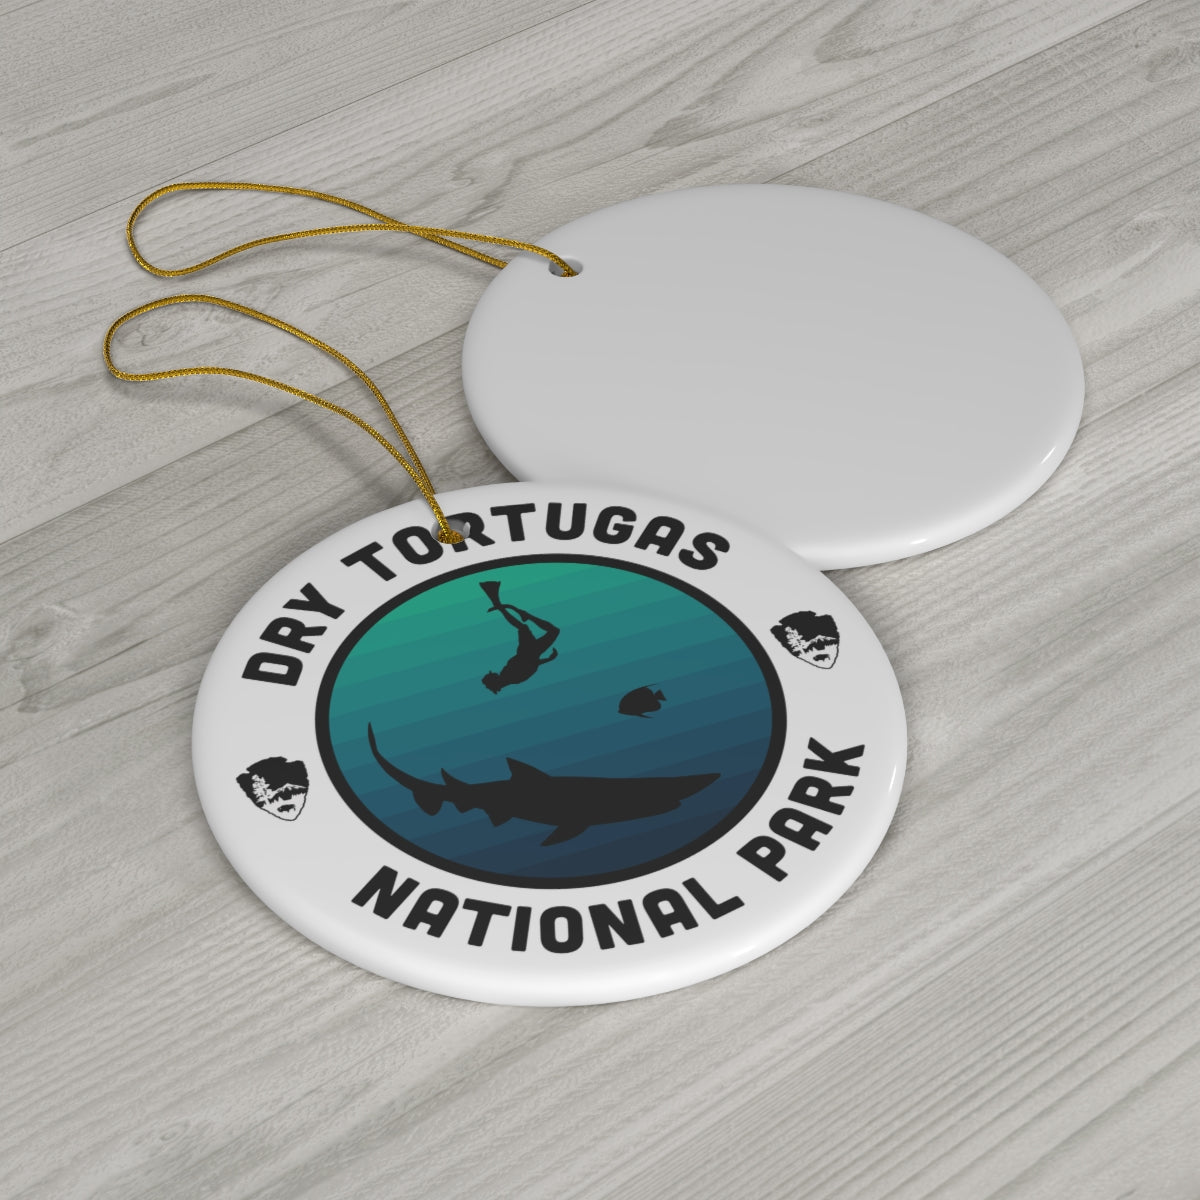 Dry Tortugas National Park Ornament - Round Emblem Design